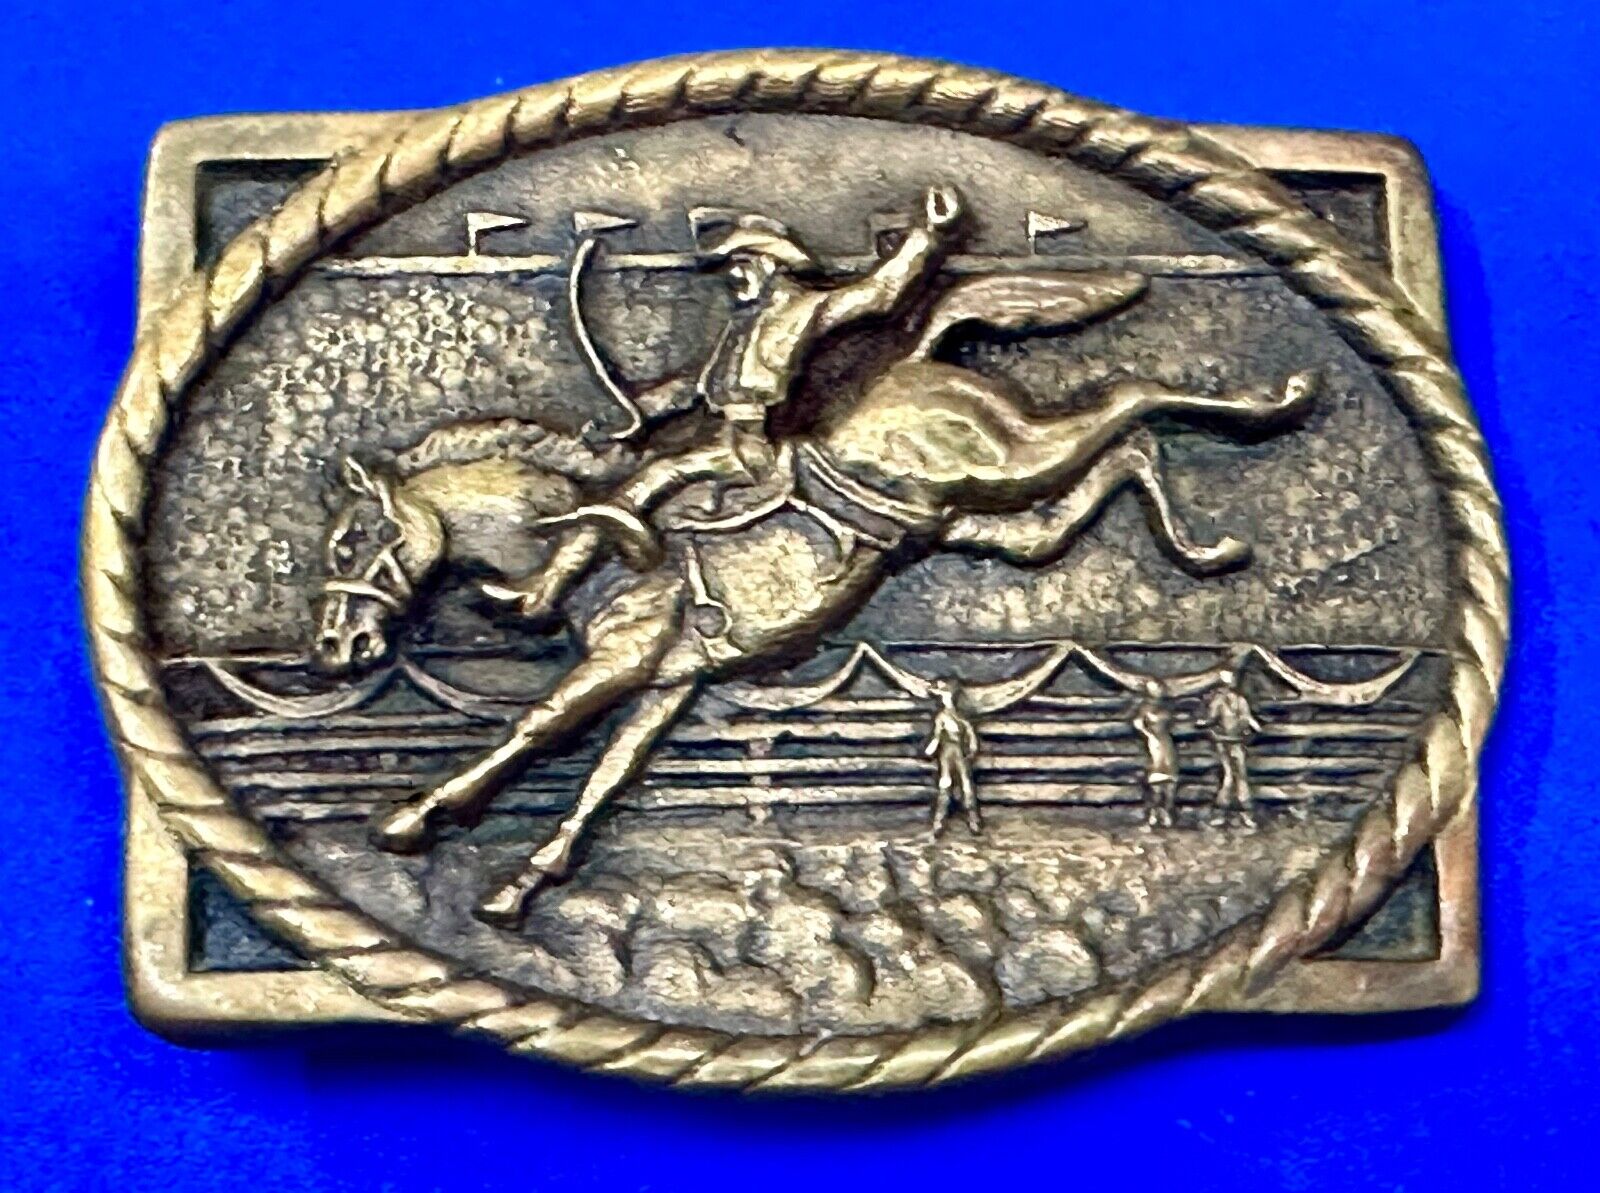 Horseback Cowboy at the Rodeo Vintage 1979 Solid Brass Heritage Mint Belt Buckle